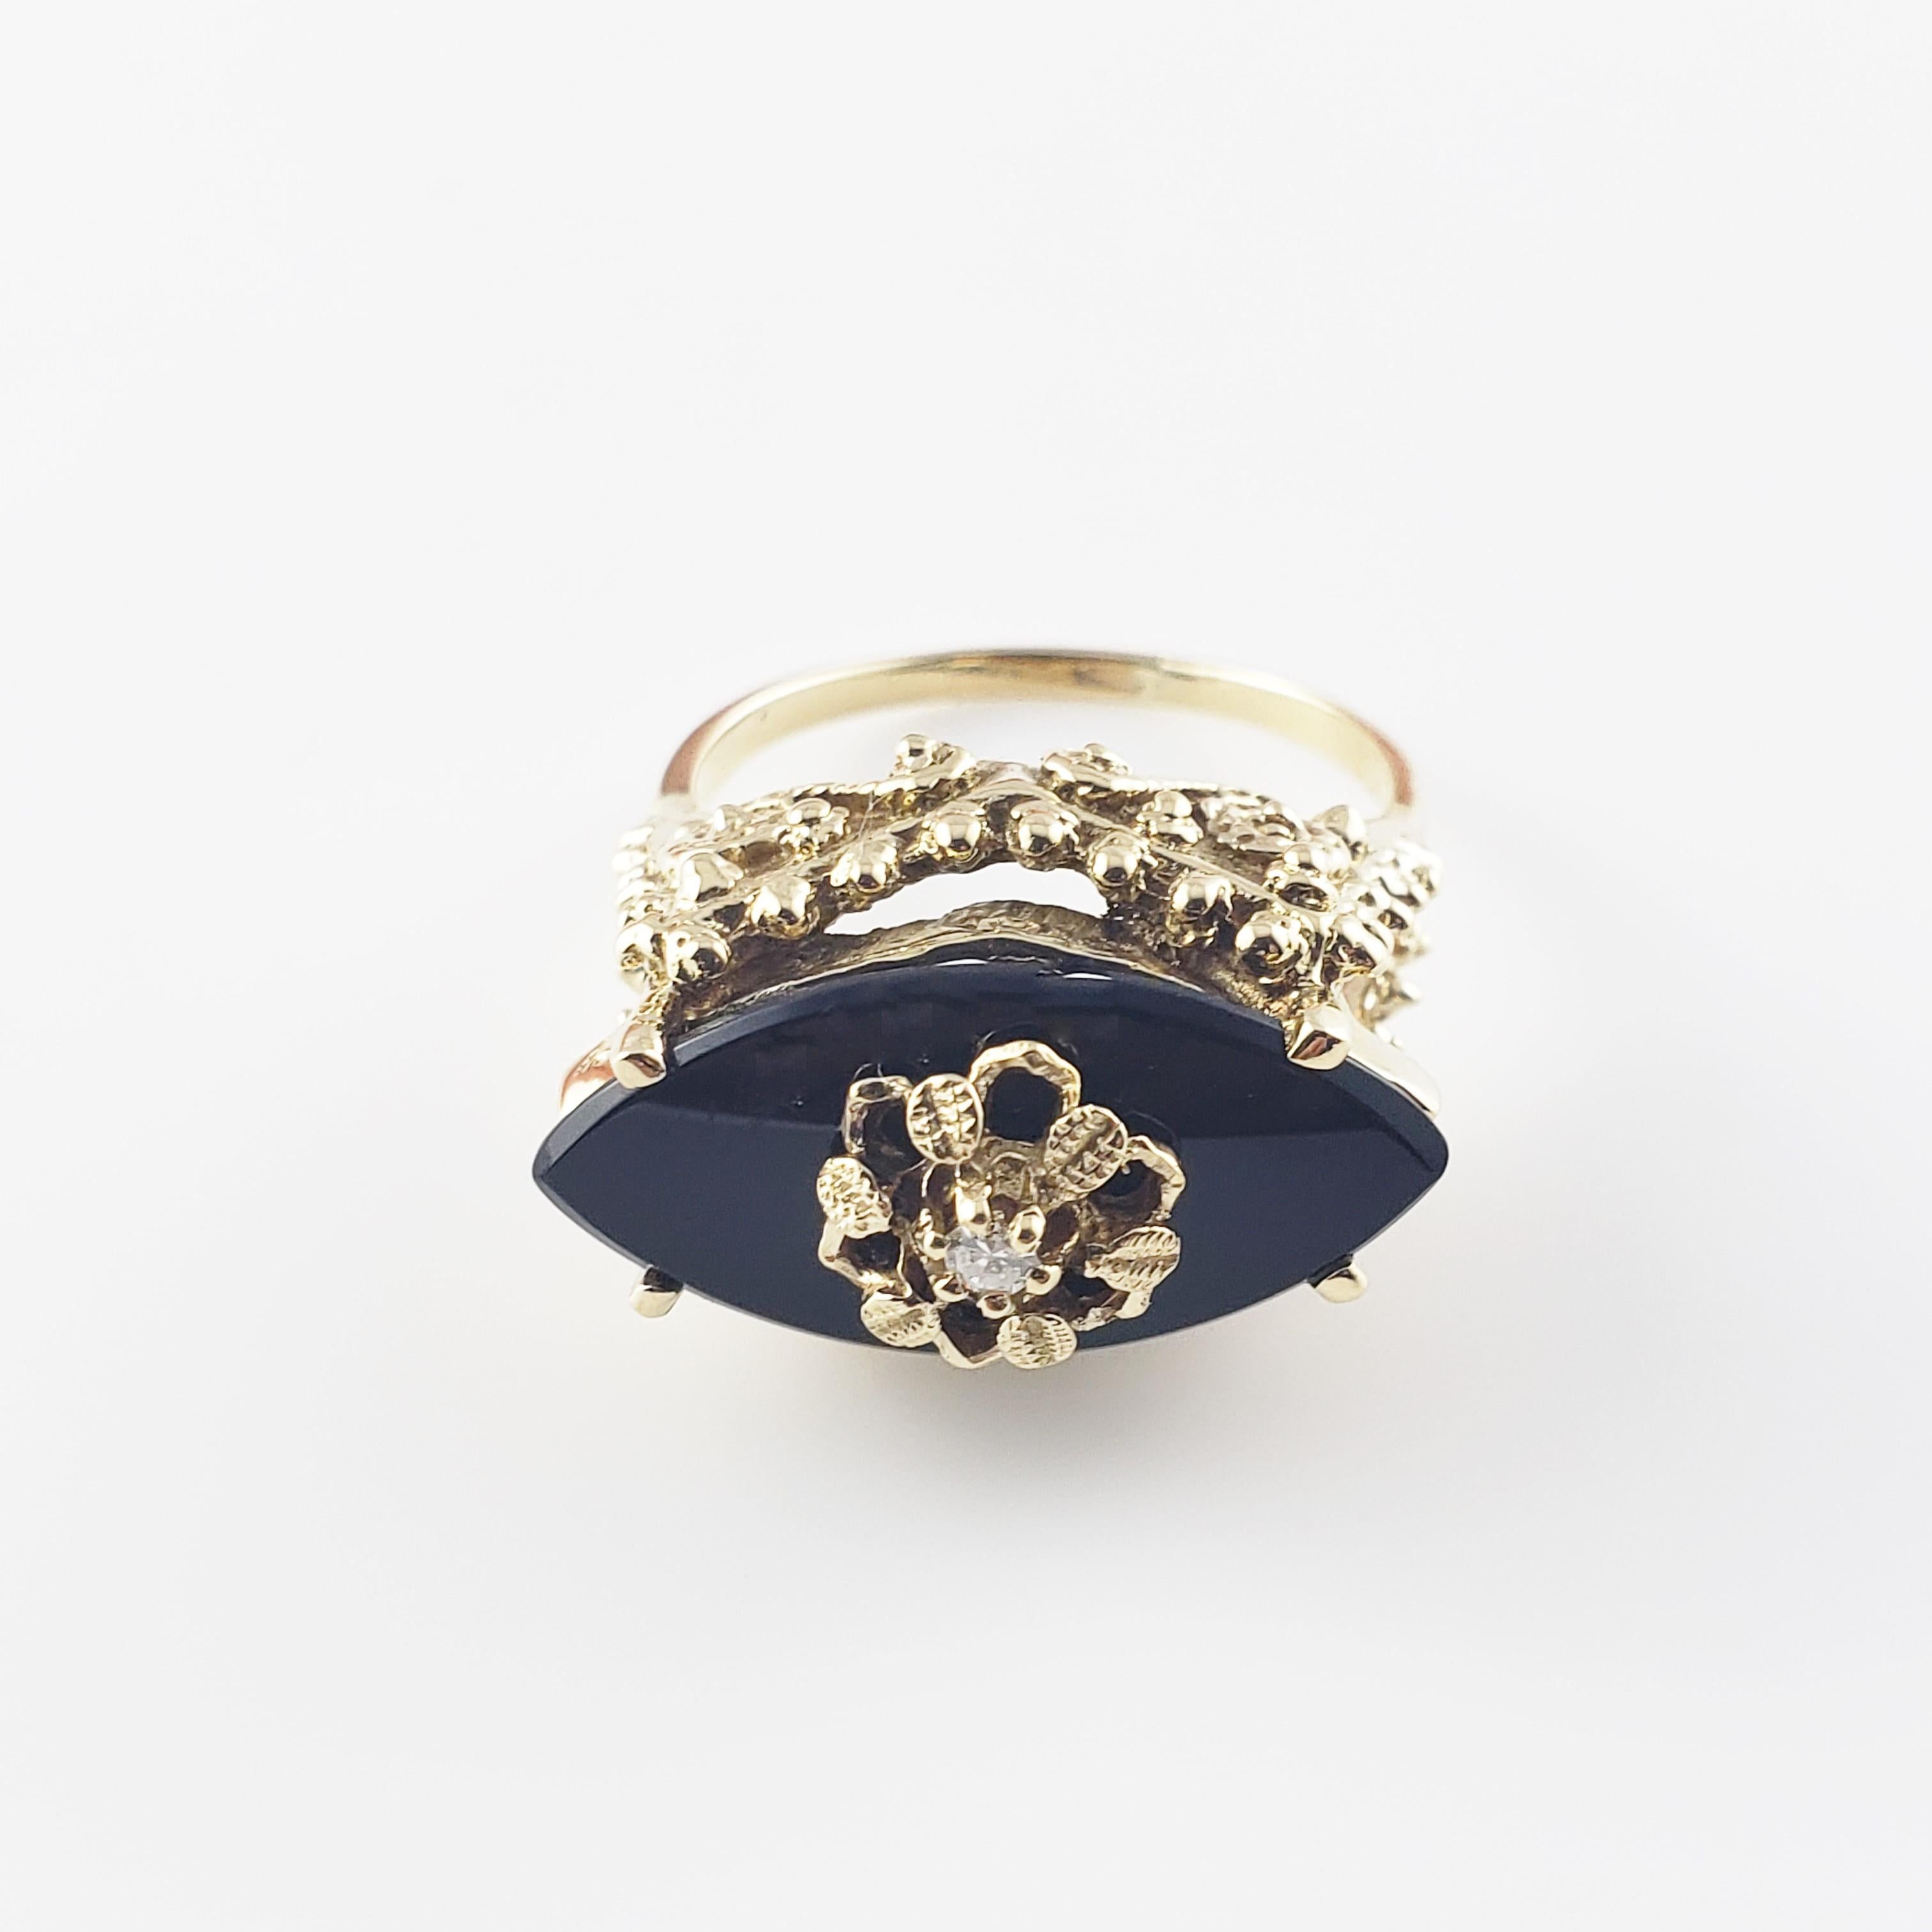 14 Karat Gelbgold Schwarzer Onyx und Diamant Ring Größe 7.75-

Dieser elegante Ring besteht aus einem schwarzen Onyx mit Marquis-Stein (20 mm x 10 mm) und einem runden Diamanten im Einzelschliff, gefasst in wunderschön detailliertem 14K-Gelbgold. 